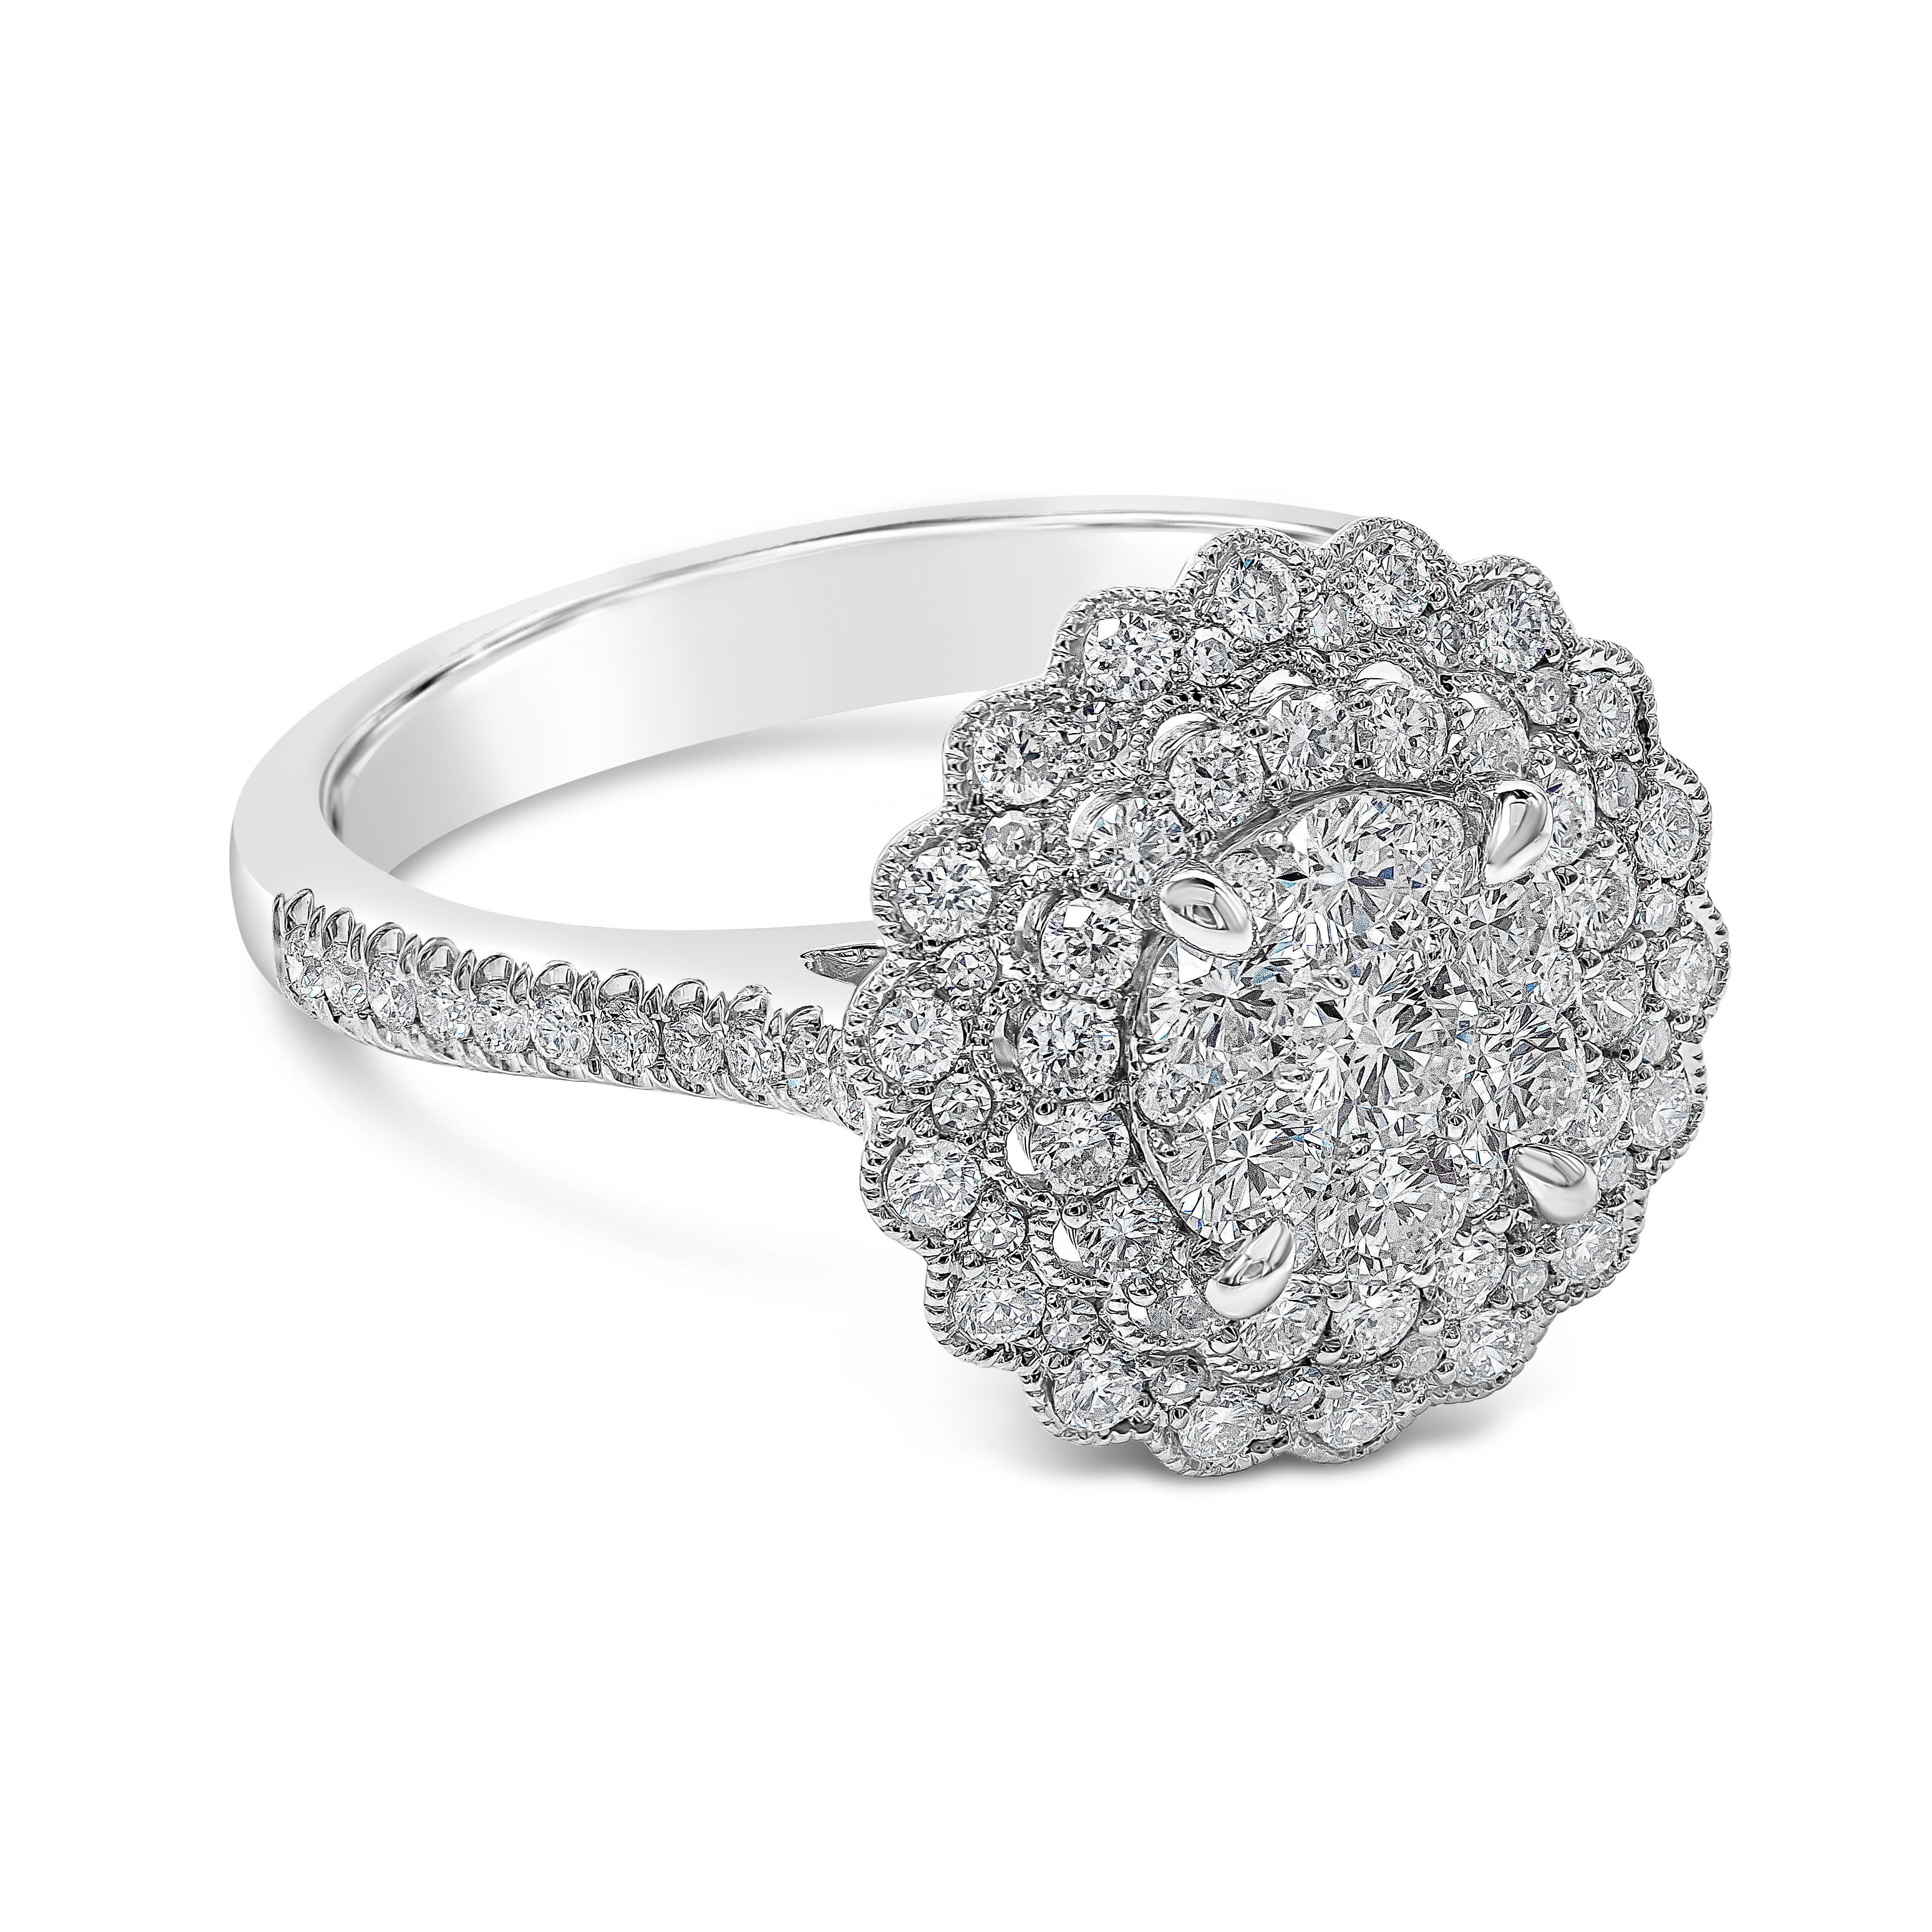 Une charmante bague de fiançailles mettant en valeur un diamant rond de taille brillant au centre, entouré de deux rangées de diamants ronds de taille brillant sertis dans un motif de fleur. Finition avec des bords en milgrain. Le tout est rehaussé